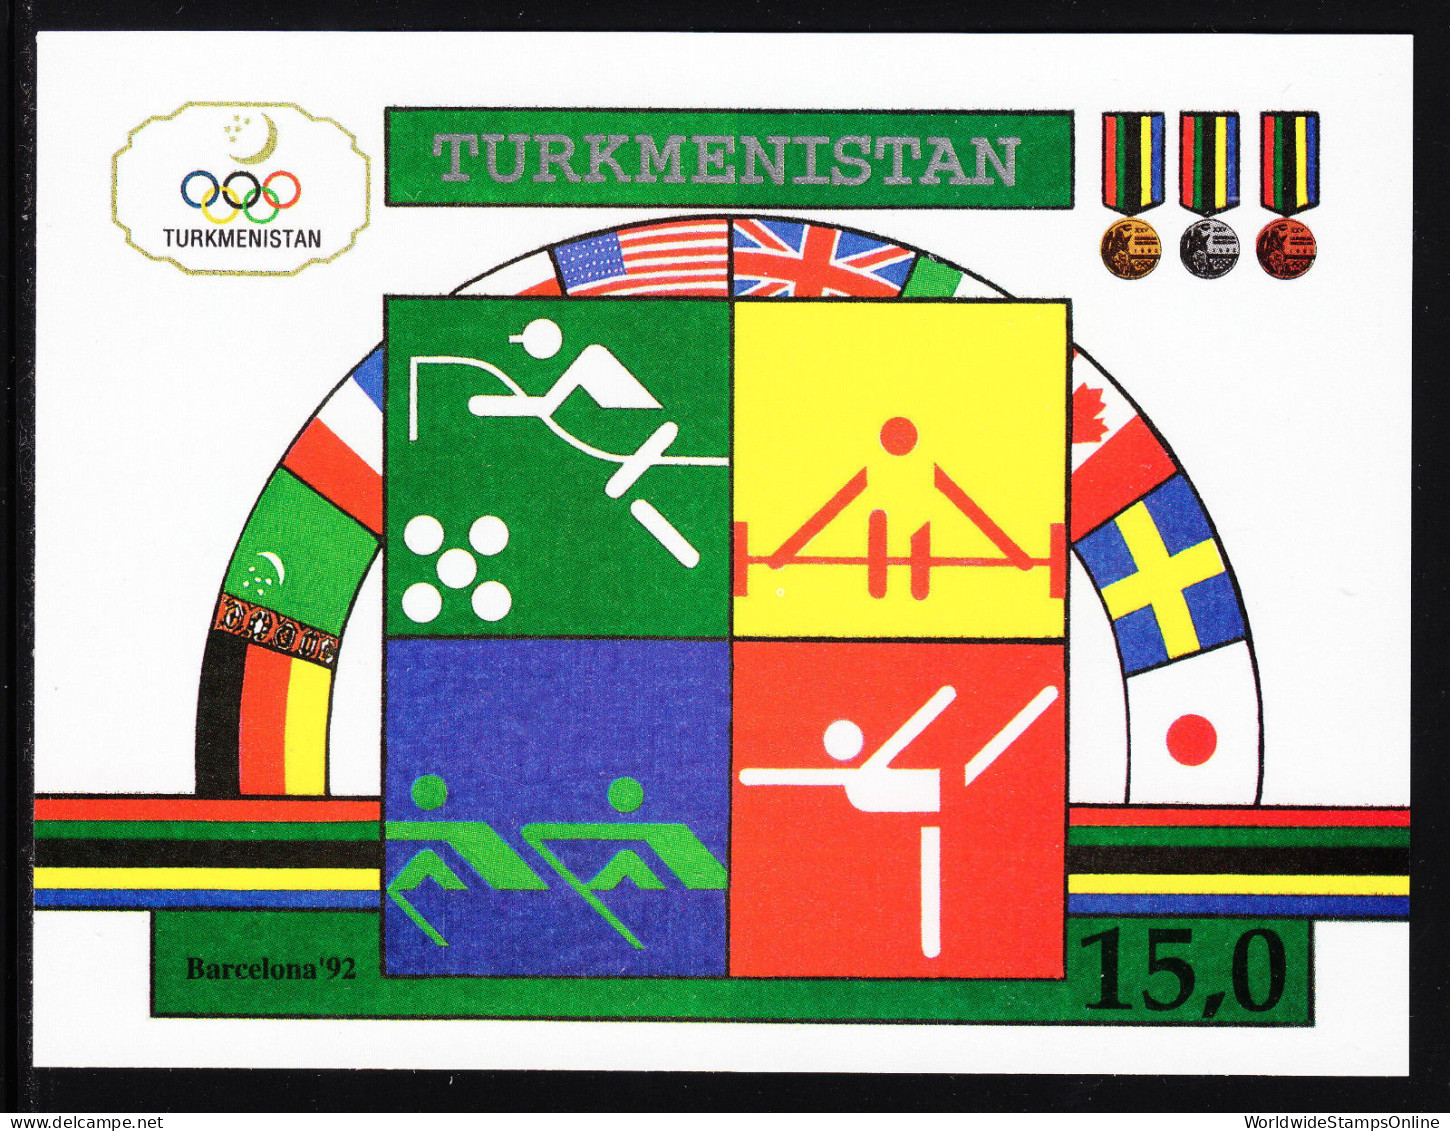 TURKMENISTAN — SCOTT 23 — 1992 15R OLYMPICS SHEET — MNH — SCV $11.00 - Turkmenistan